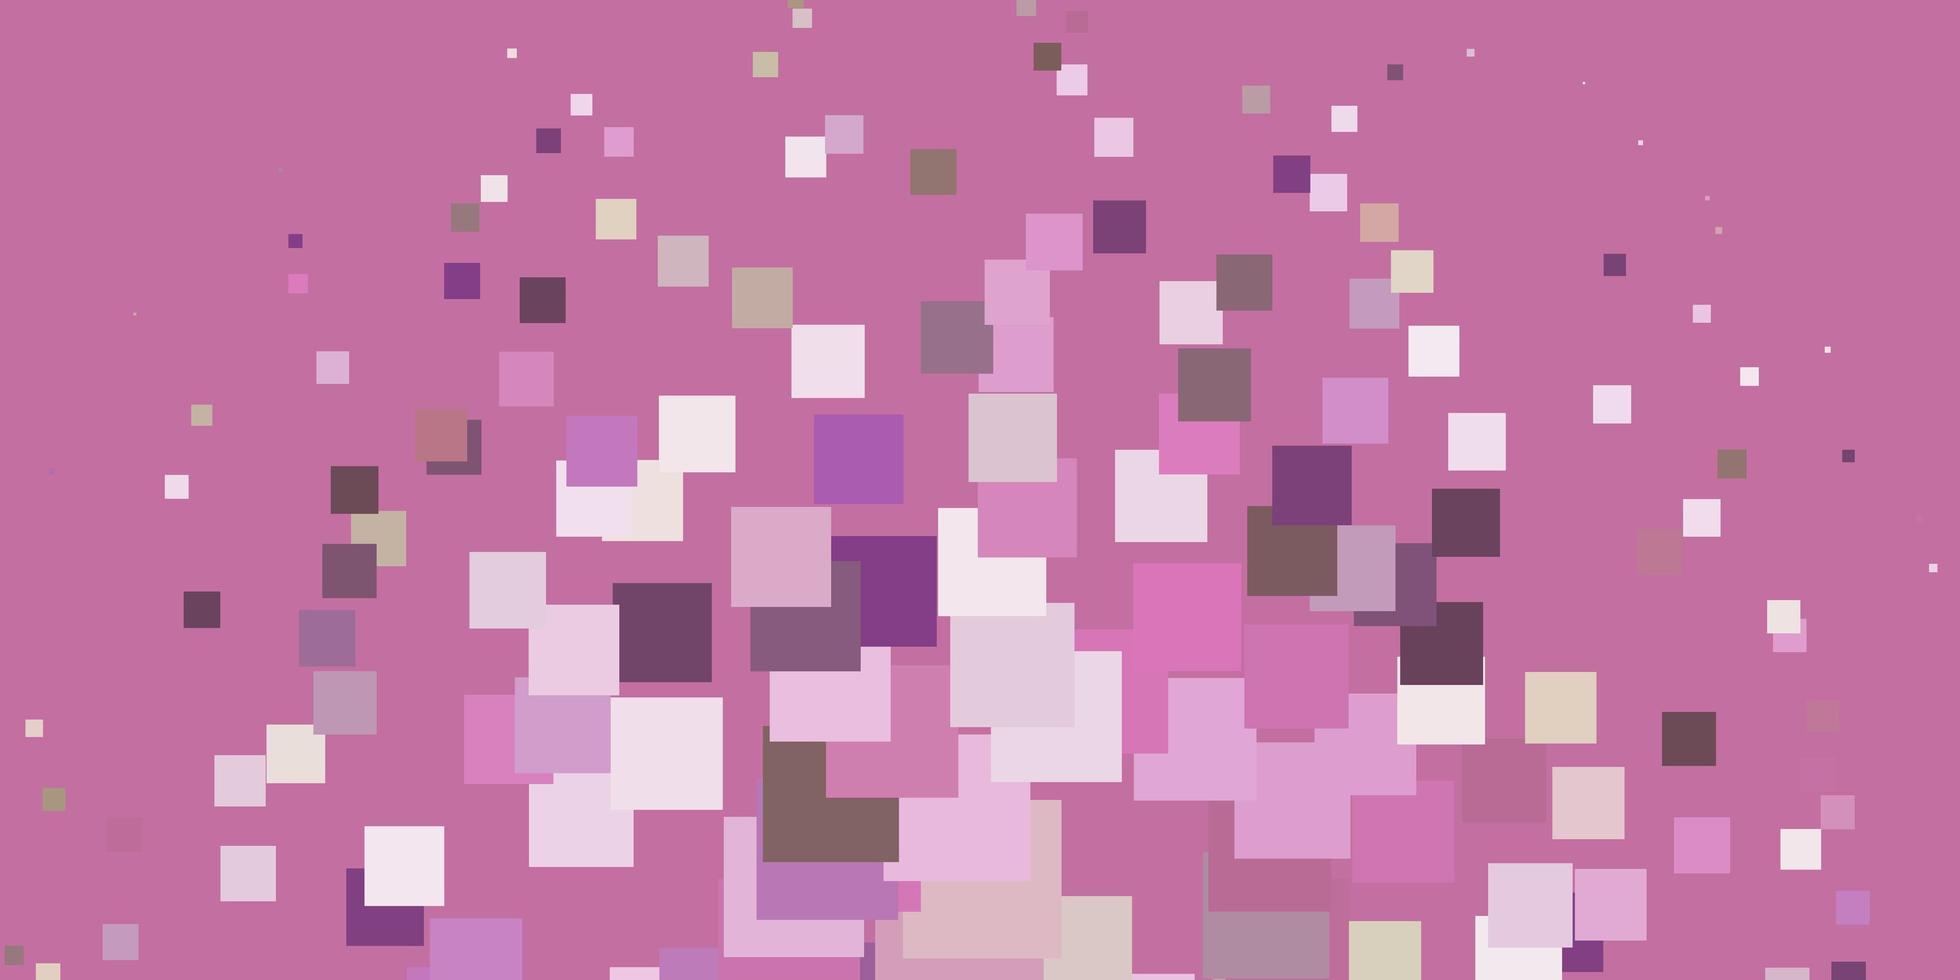 Plantilla de vector verde rosa claro en ilustración de rectángulos con un conjunto de rectángulos degradados, el mejor diseño para su banner de cartel publicitario